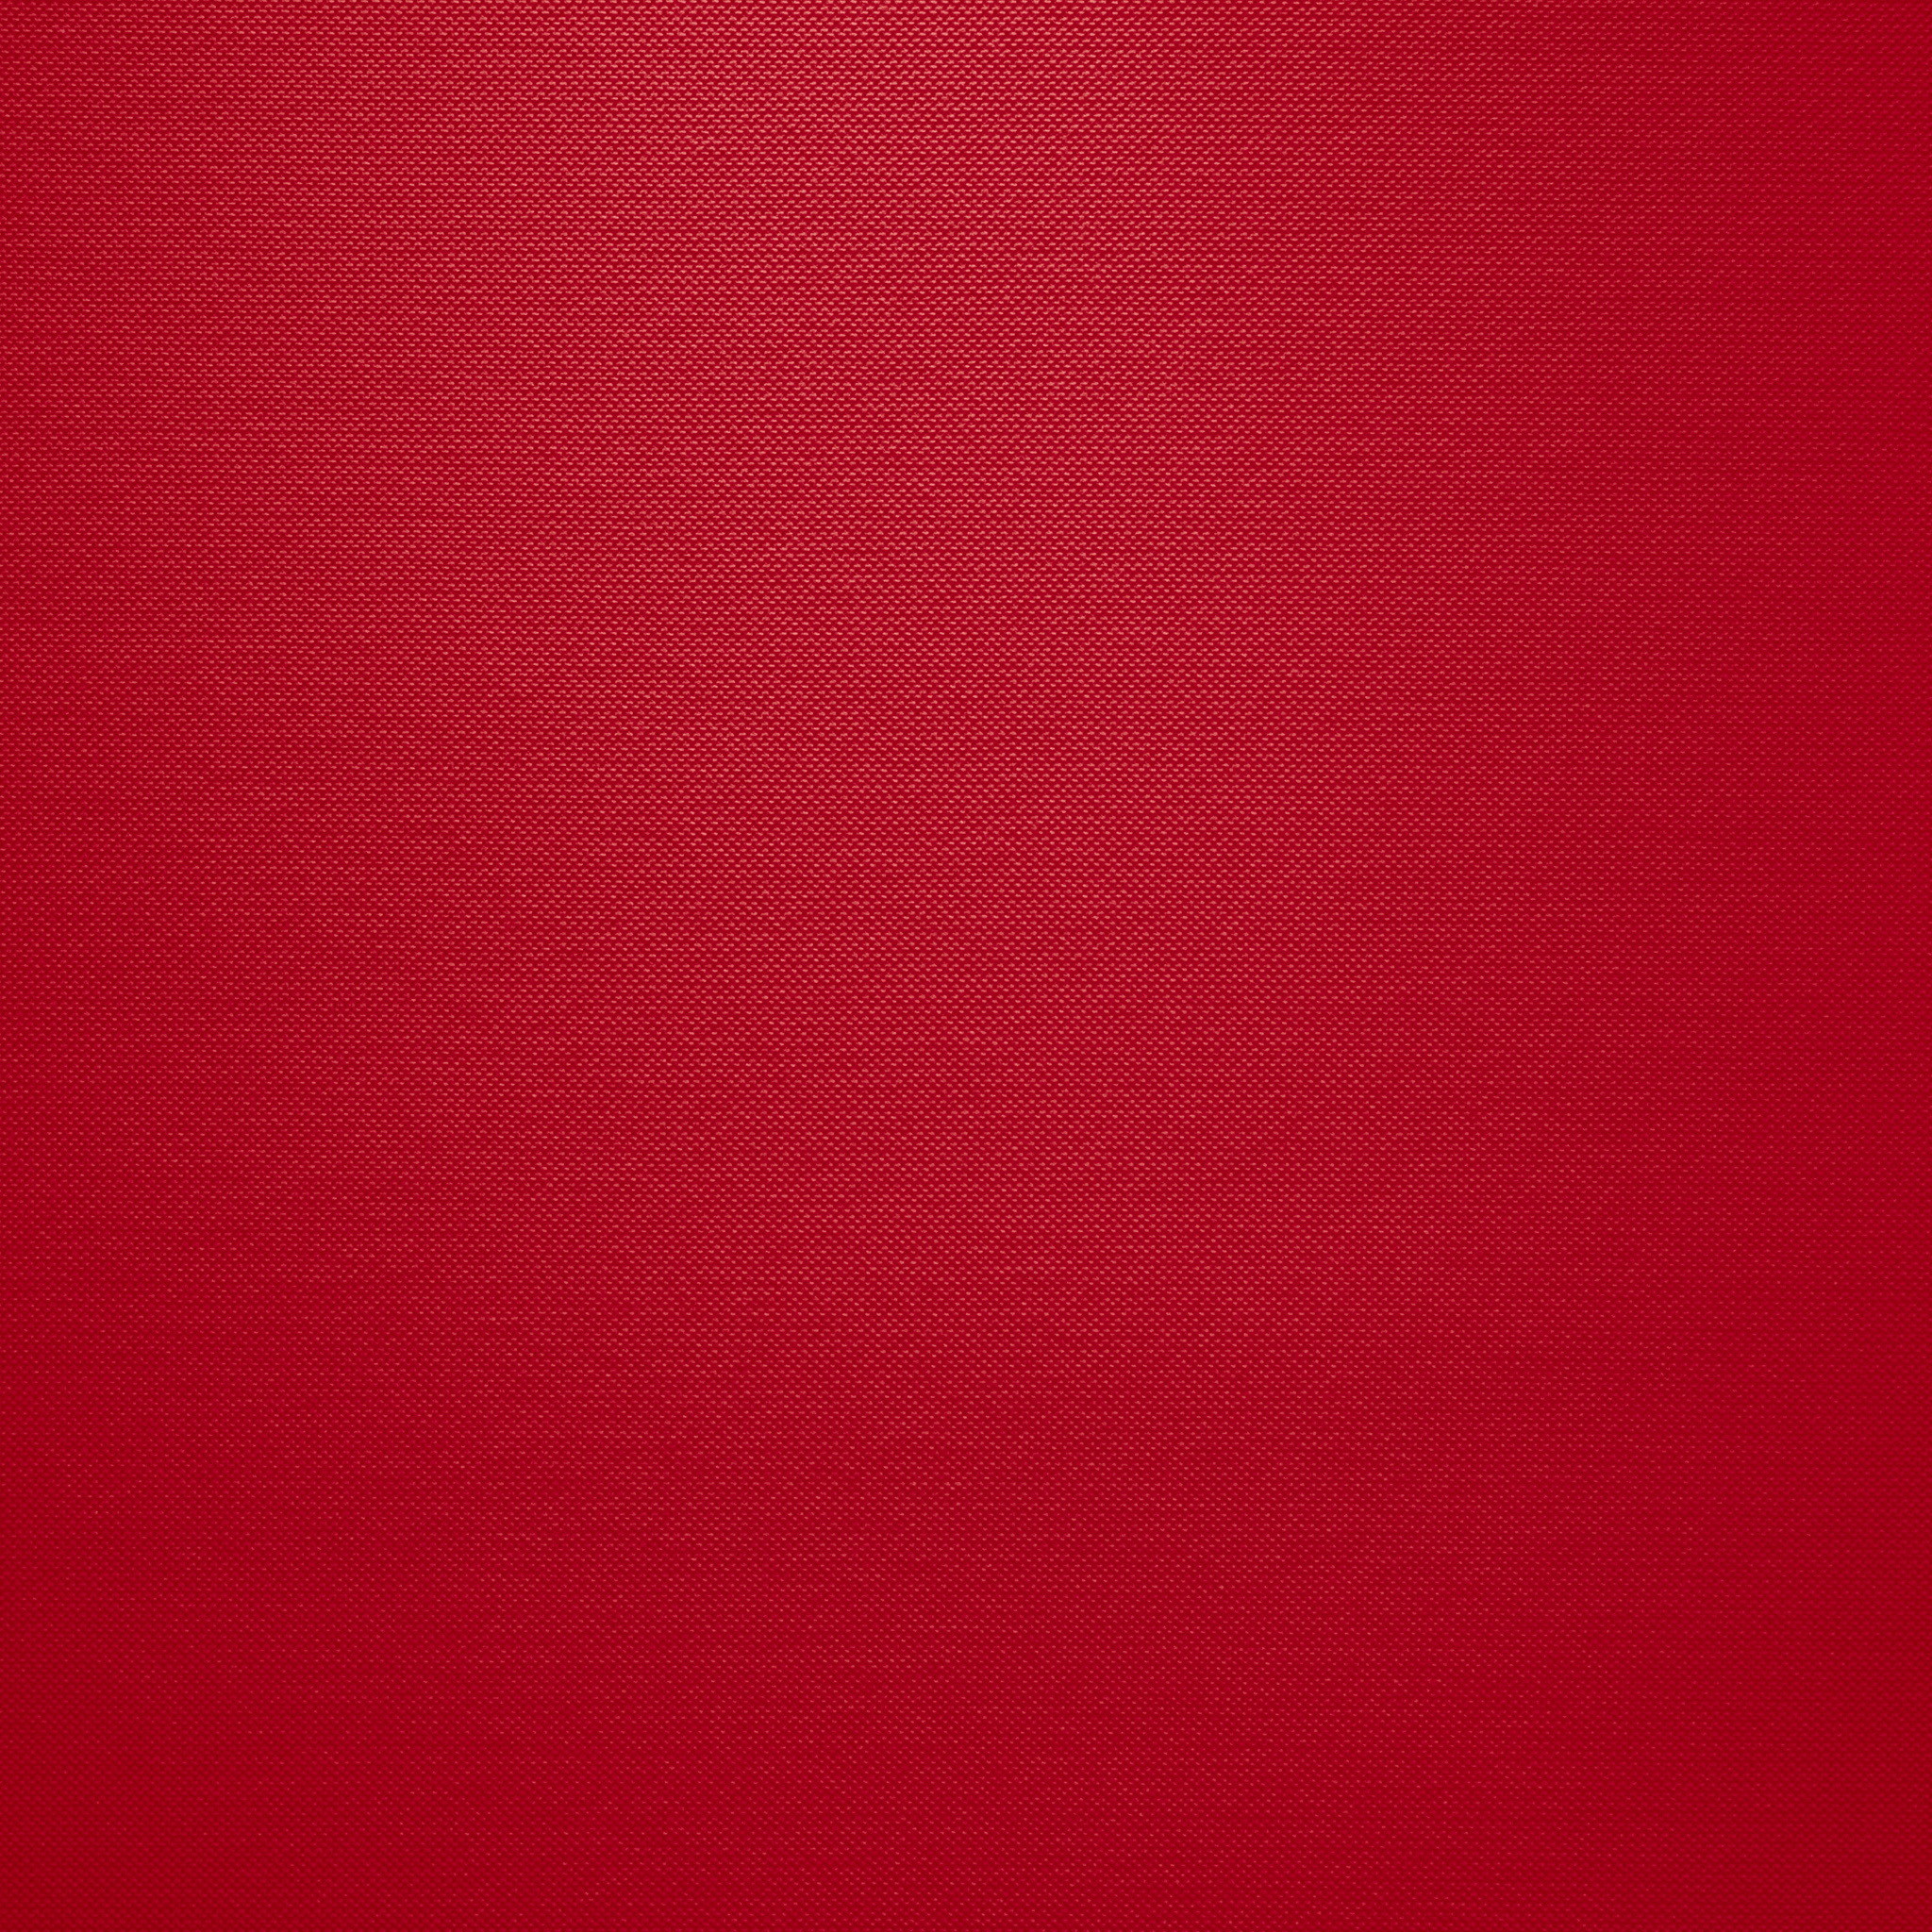 赤い布のipad壁紙 Ipad タブレット壁紙ギャラリー